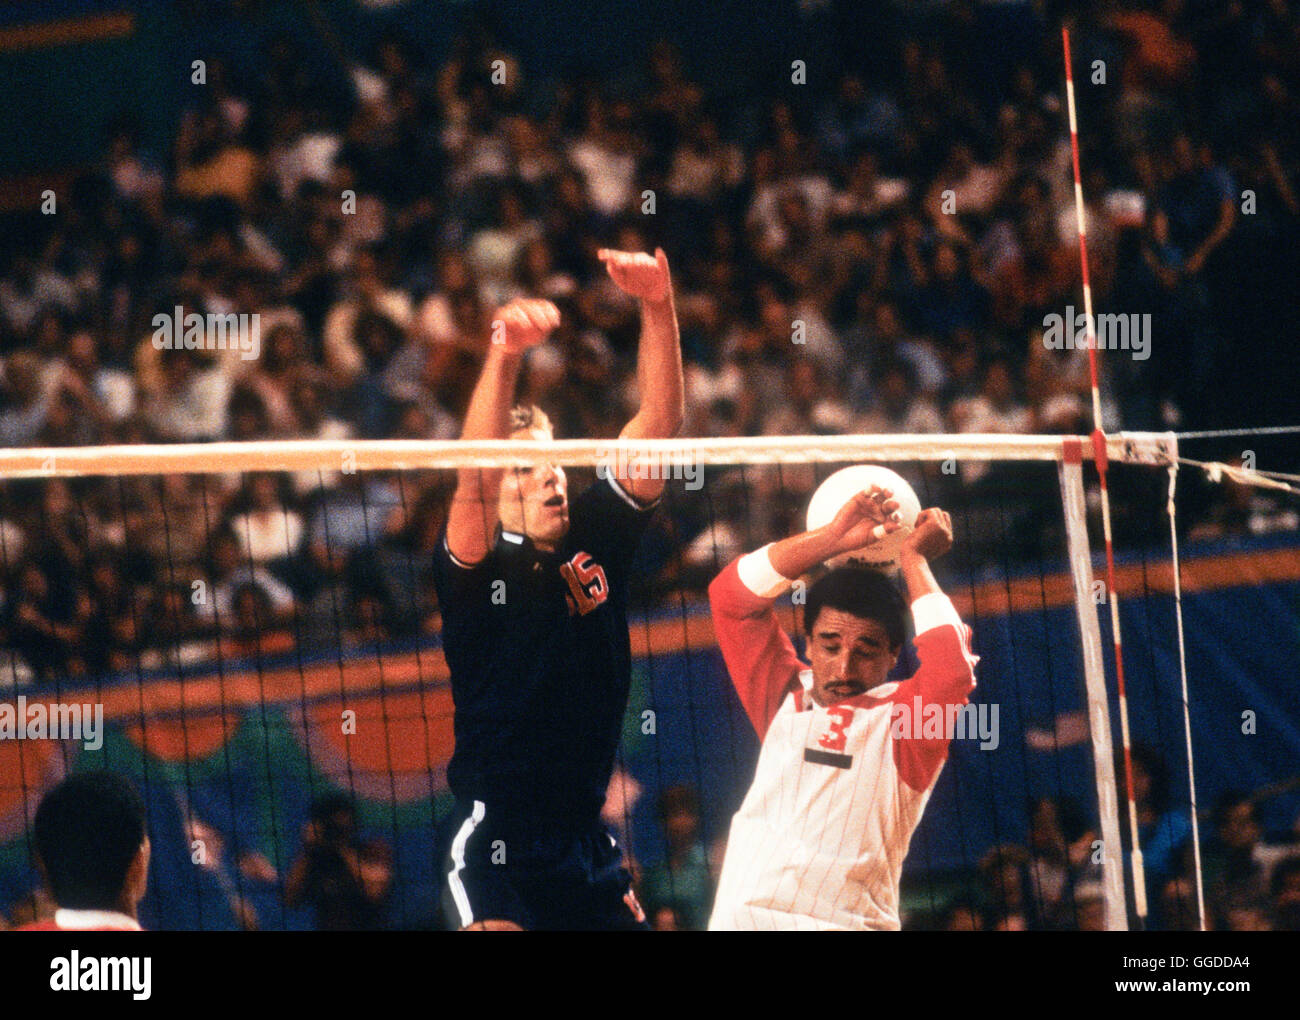 USA # 15 Karch Kiraly en action au cours de match à Long Beach Arena, les hommes de l'équipe de volley-ball aux Jeux Olympiques de 1984 Banque D'Images